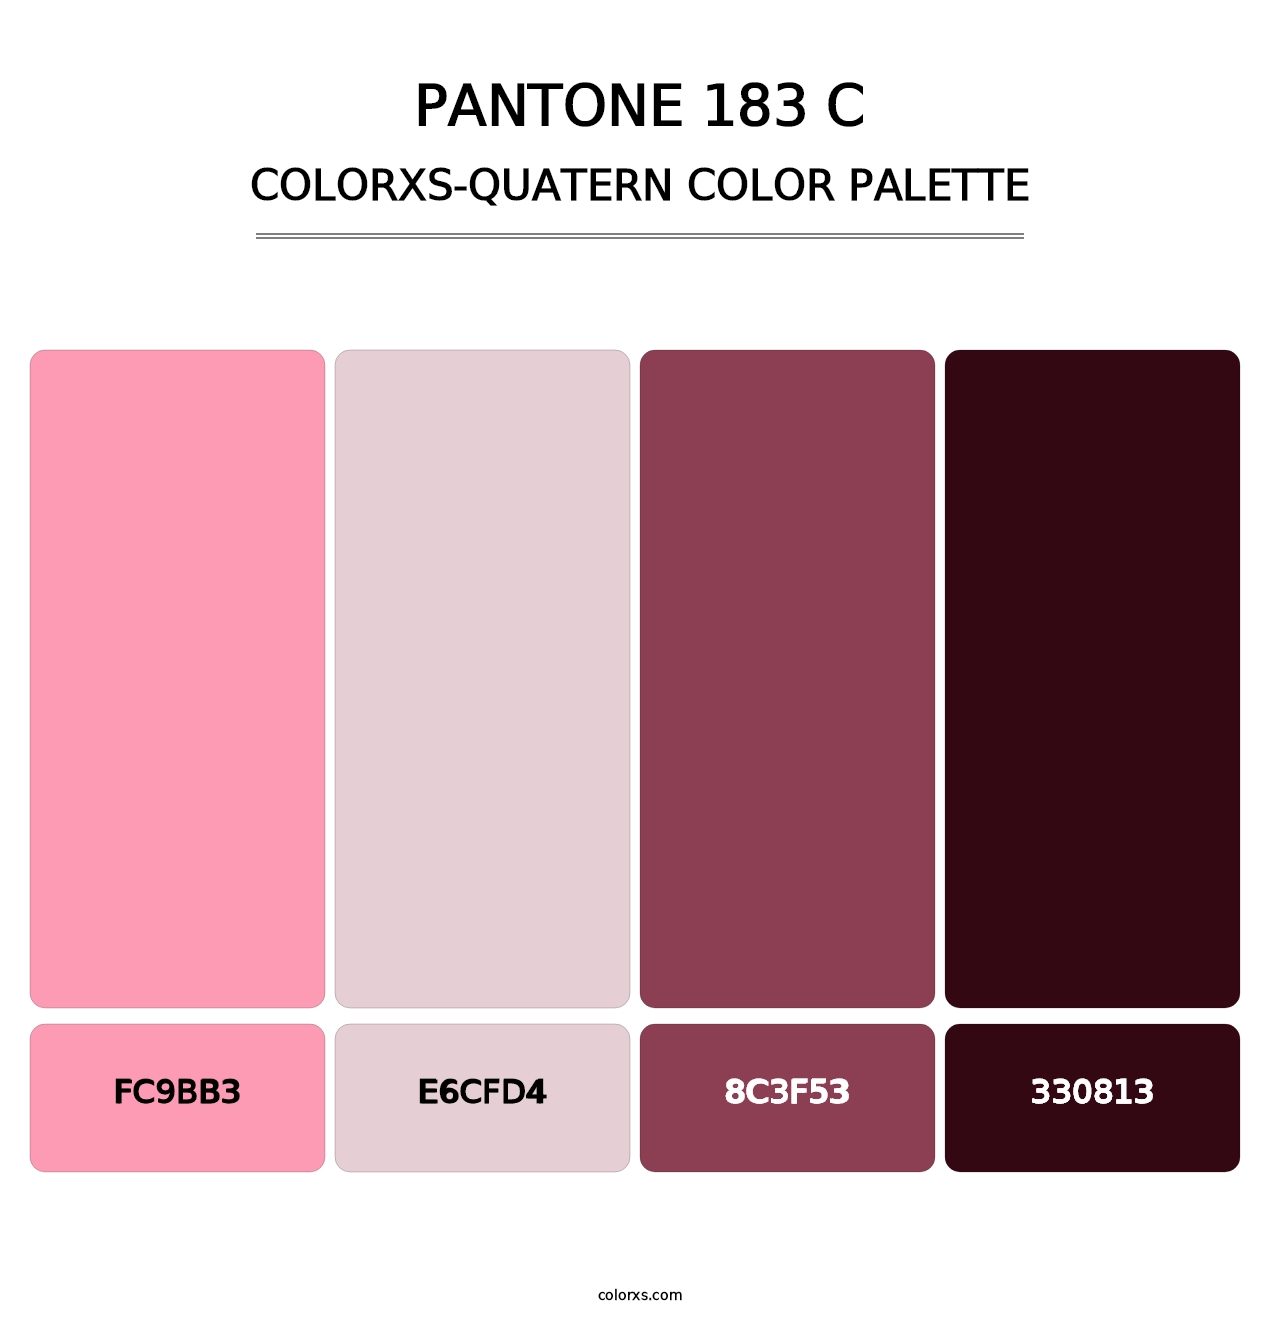 PANTONE 183 C - Colorxs Quatern Palette